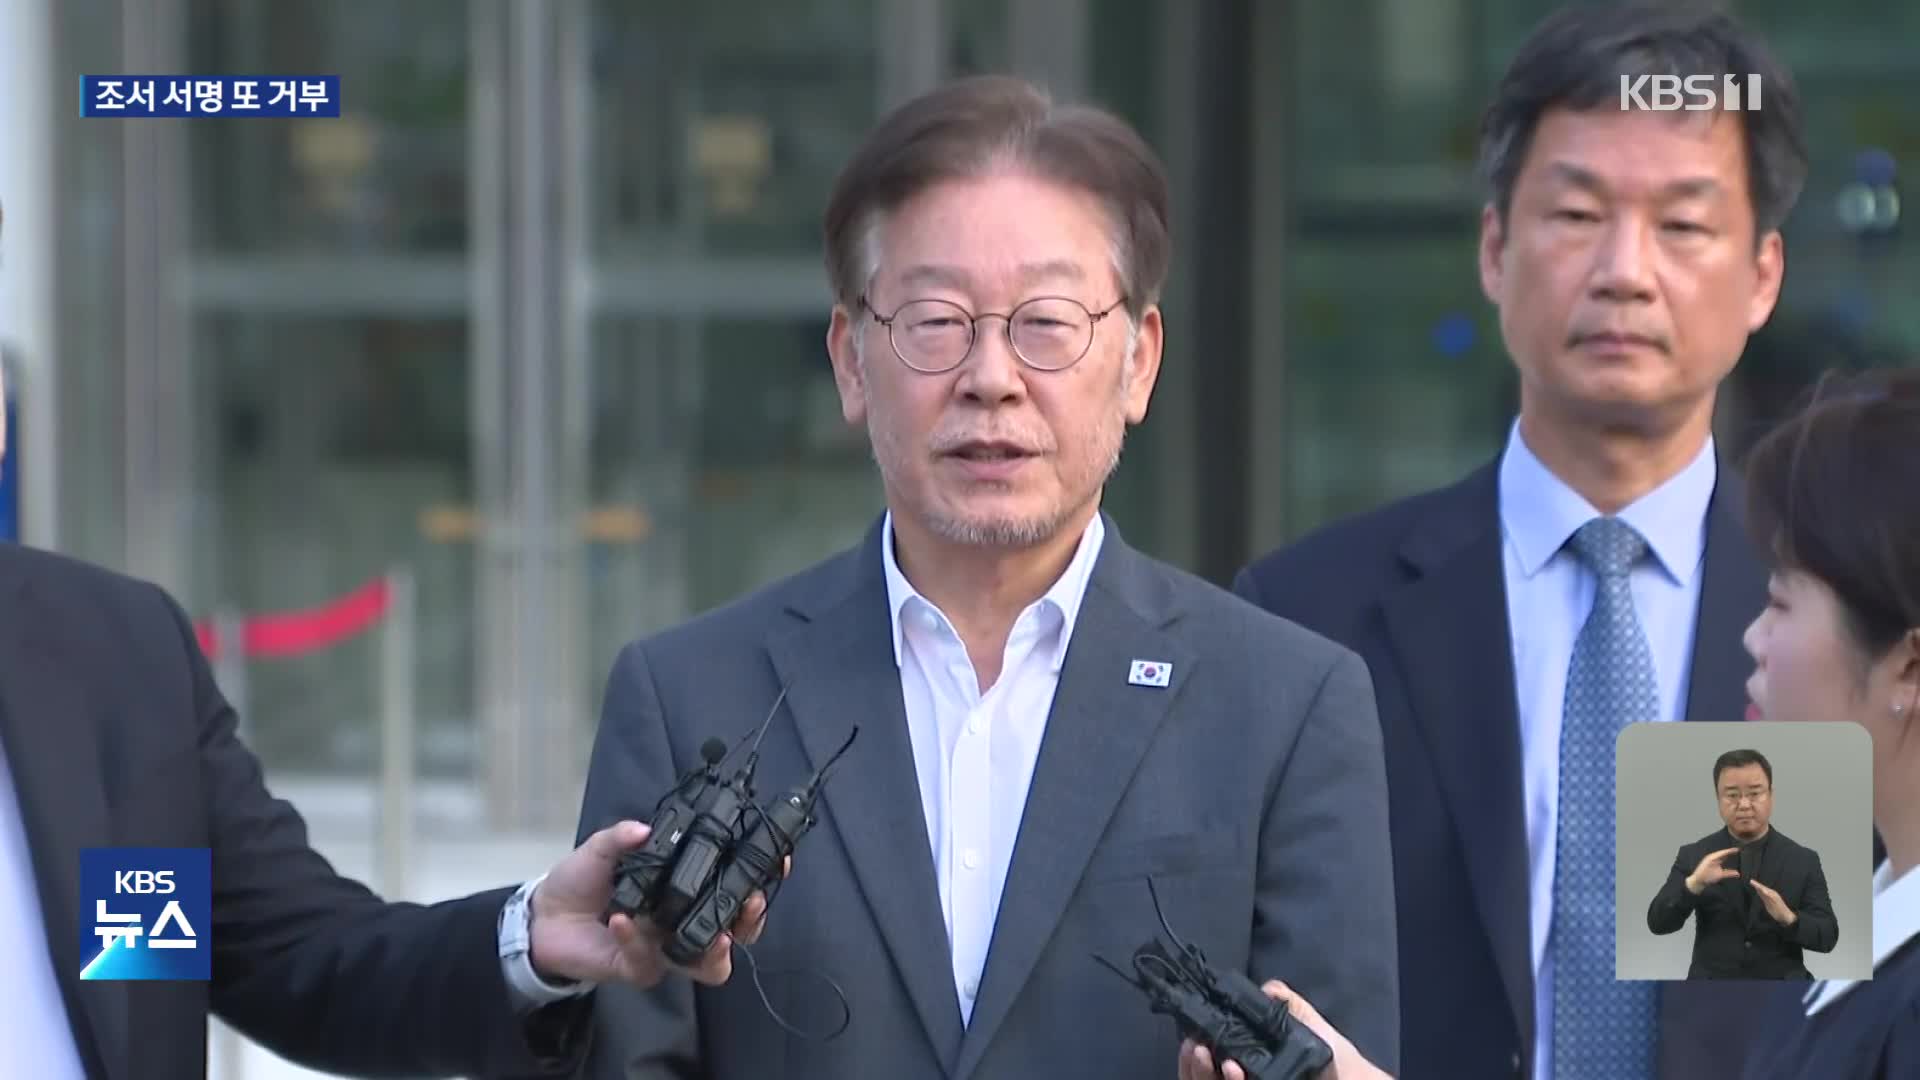 ‘쌍방울 대북송금 의혹’ 이재명 조사 일단락…조서 서명은 끝내 거부